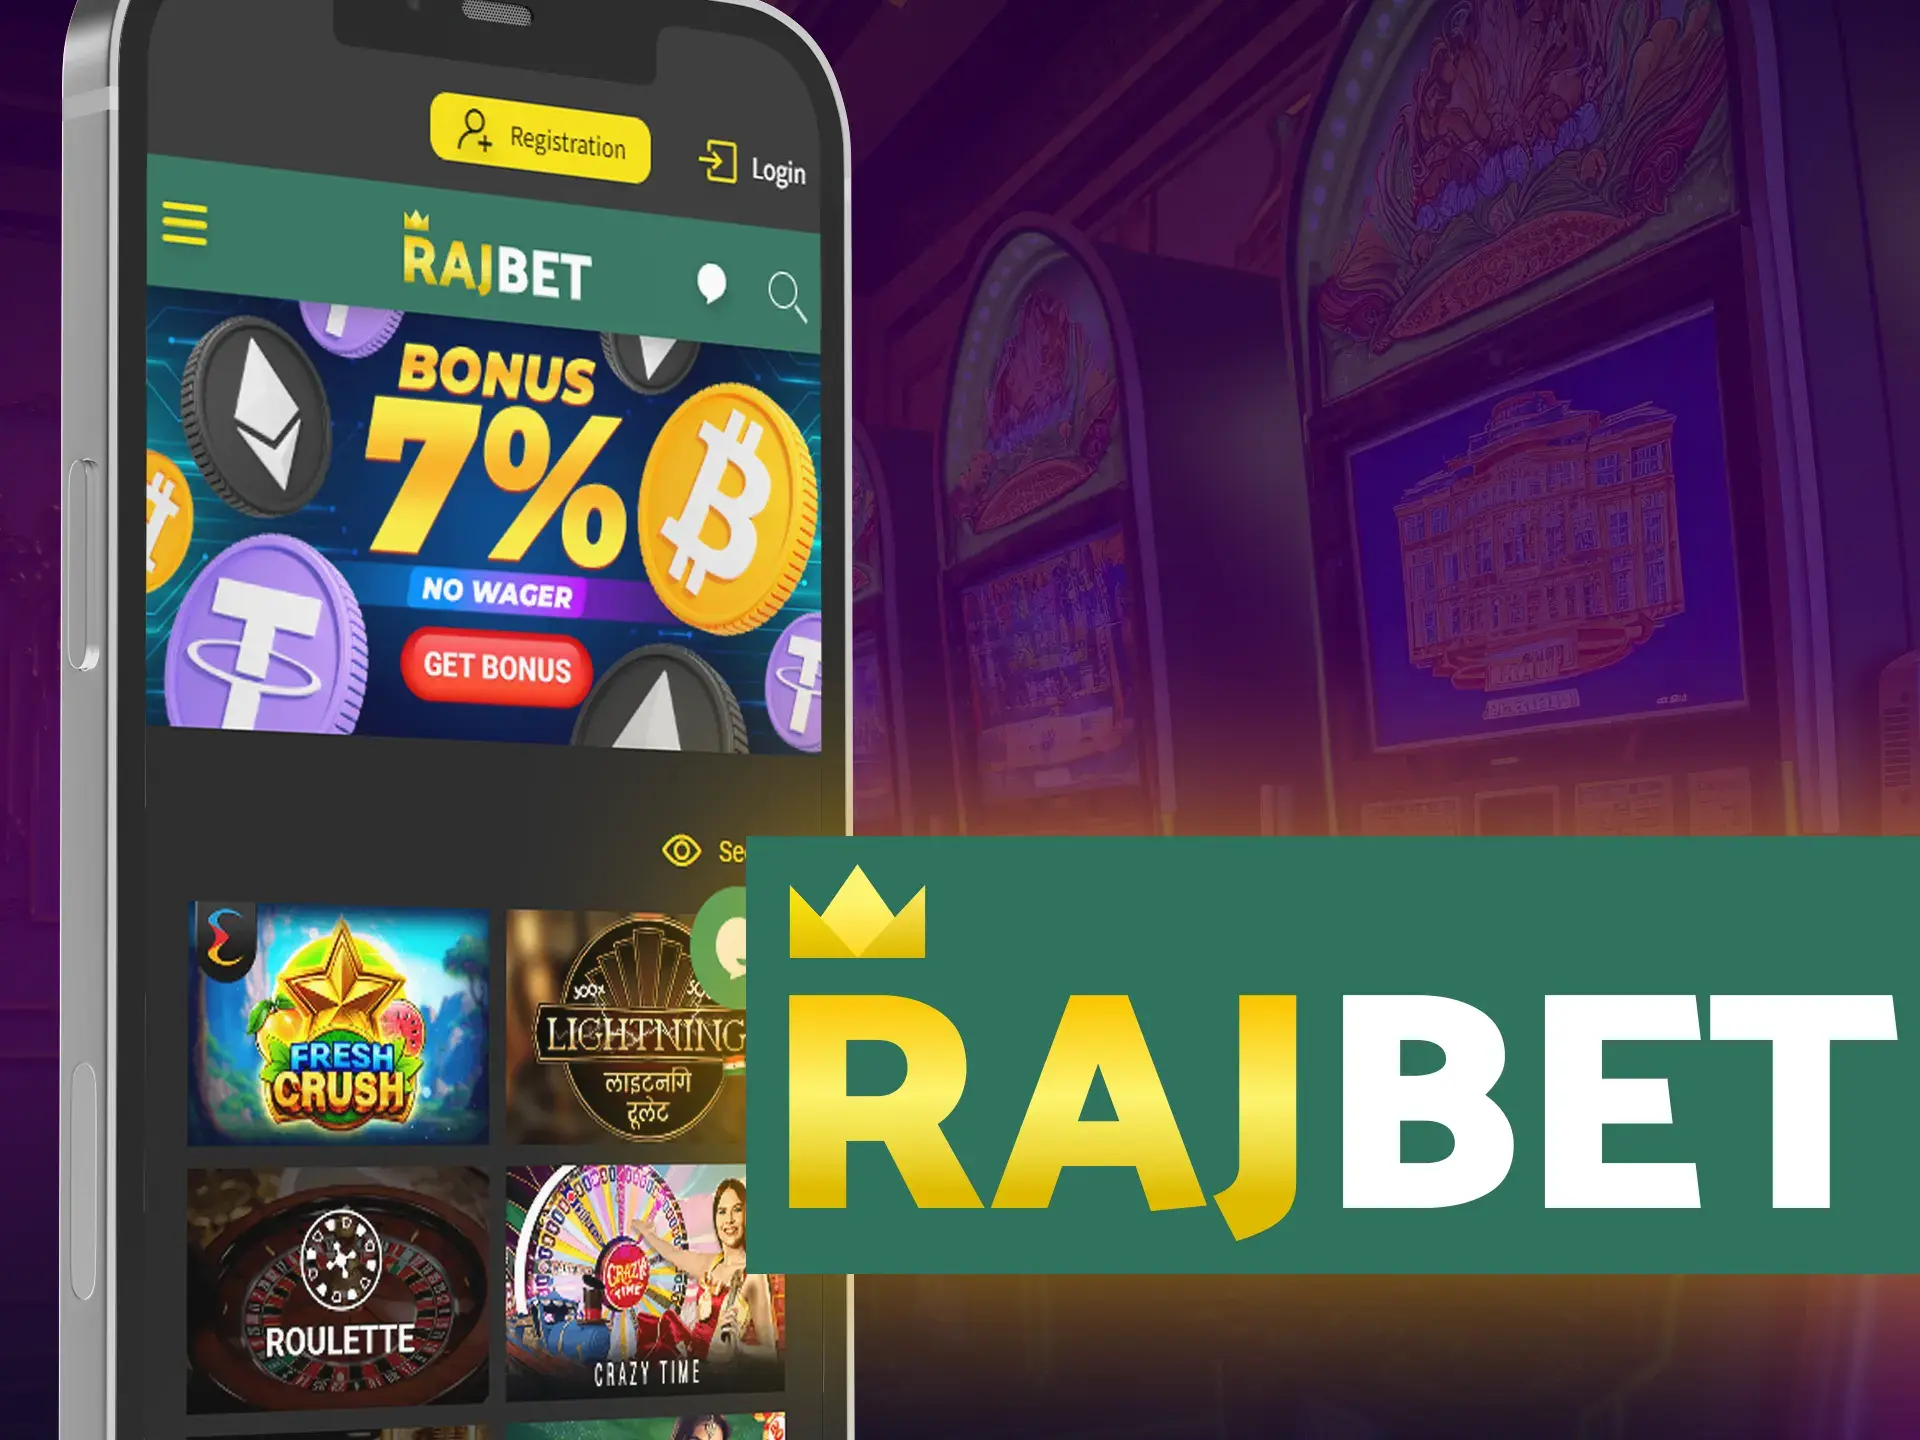 Play the best slots in the Rajbet app.